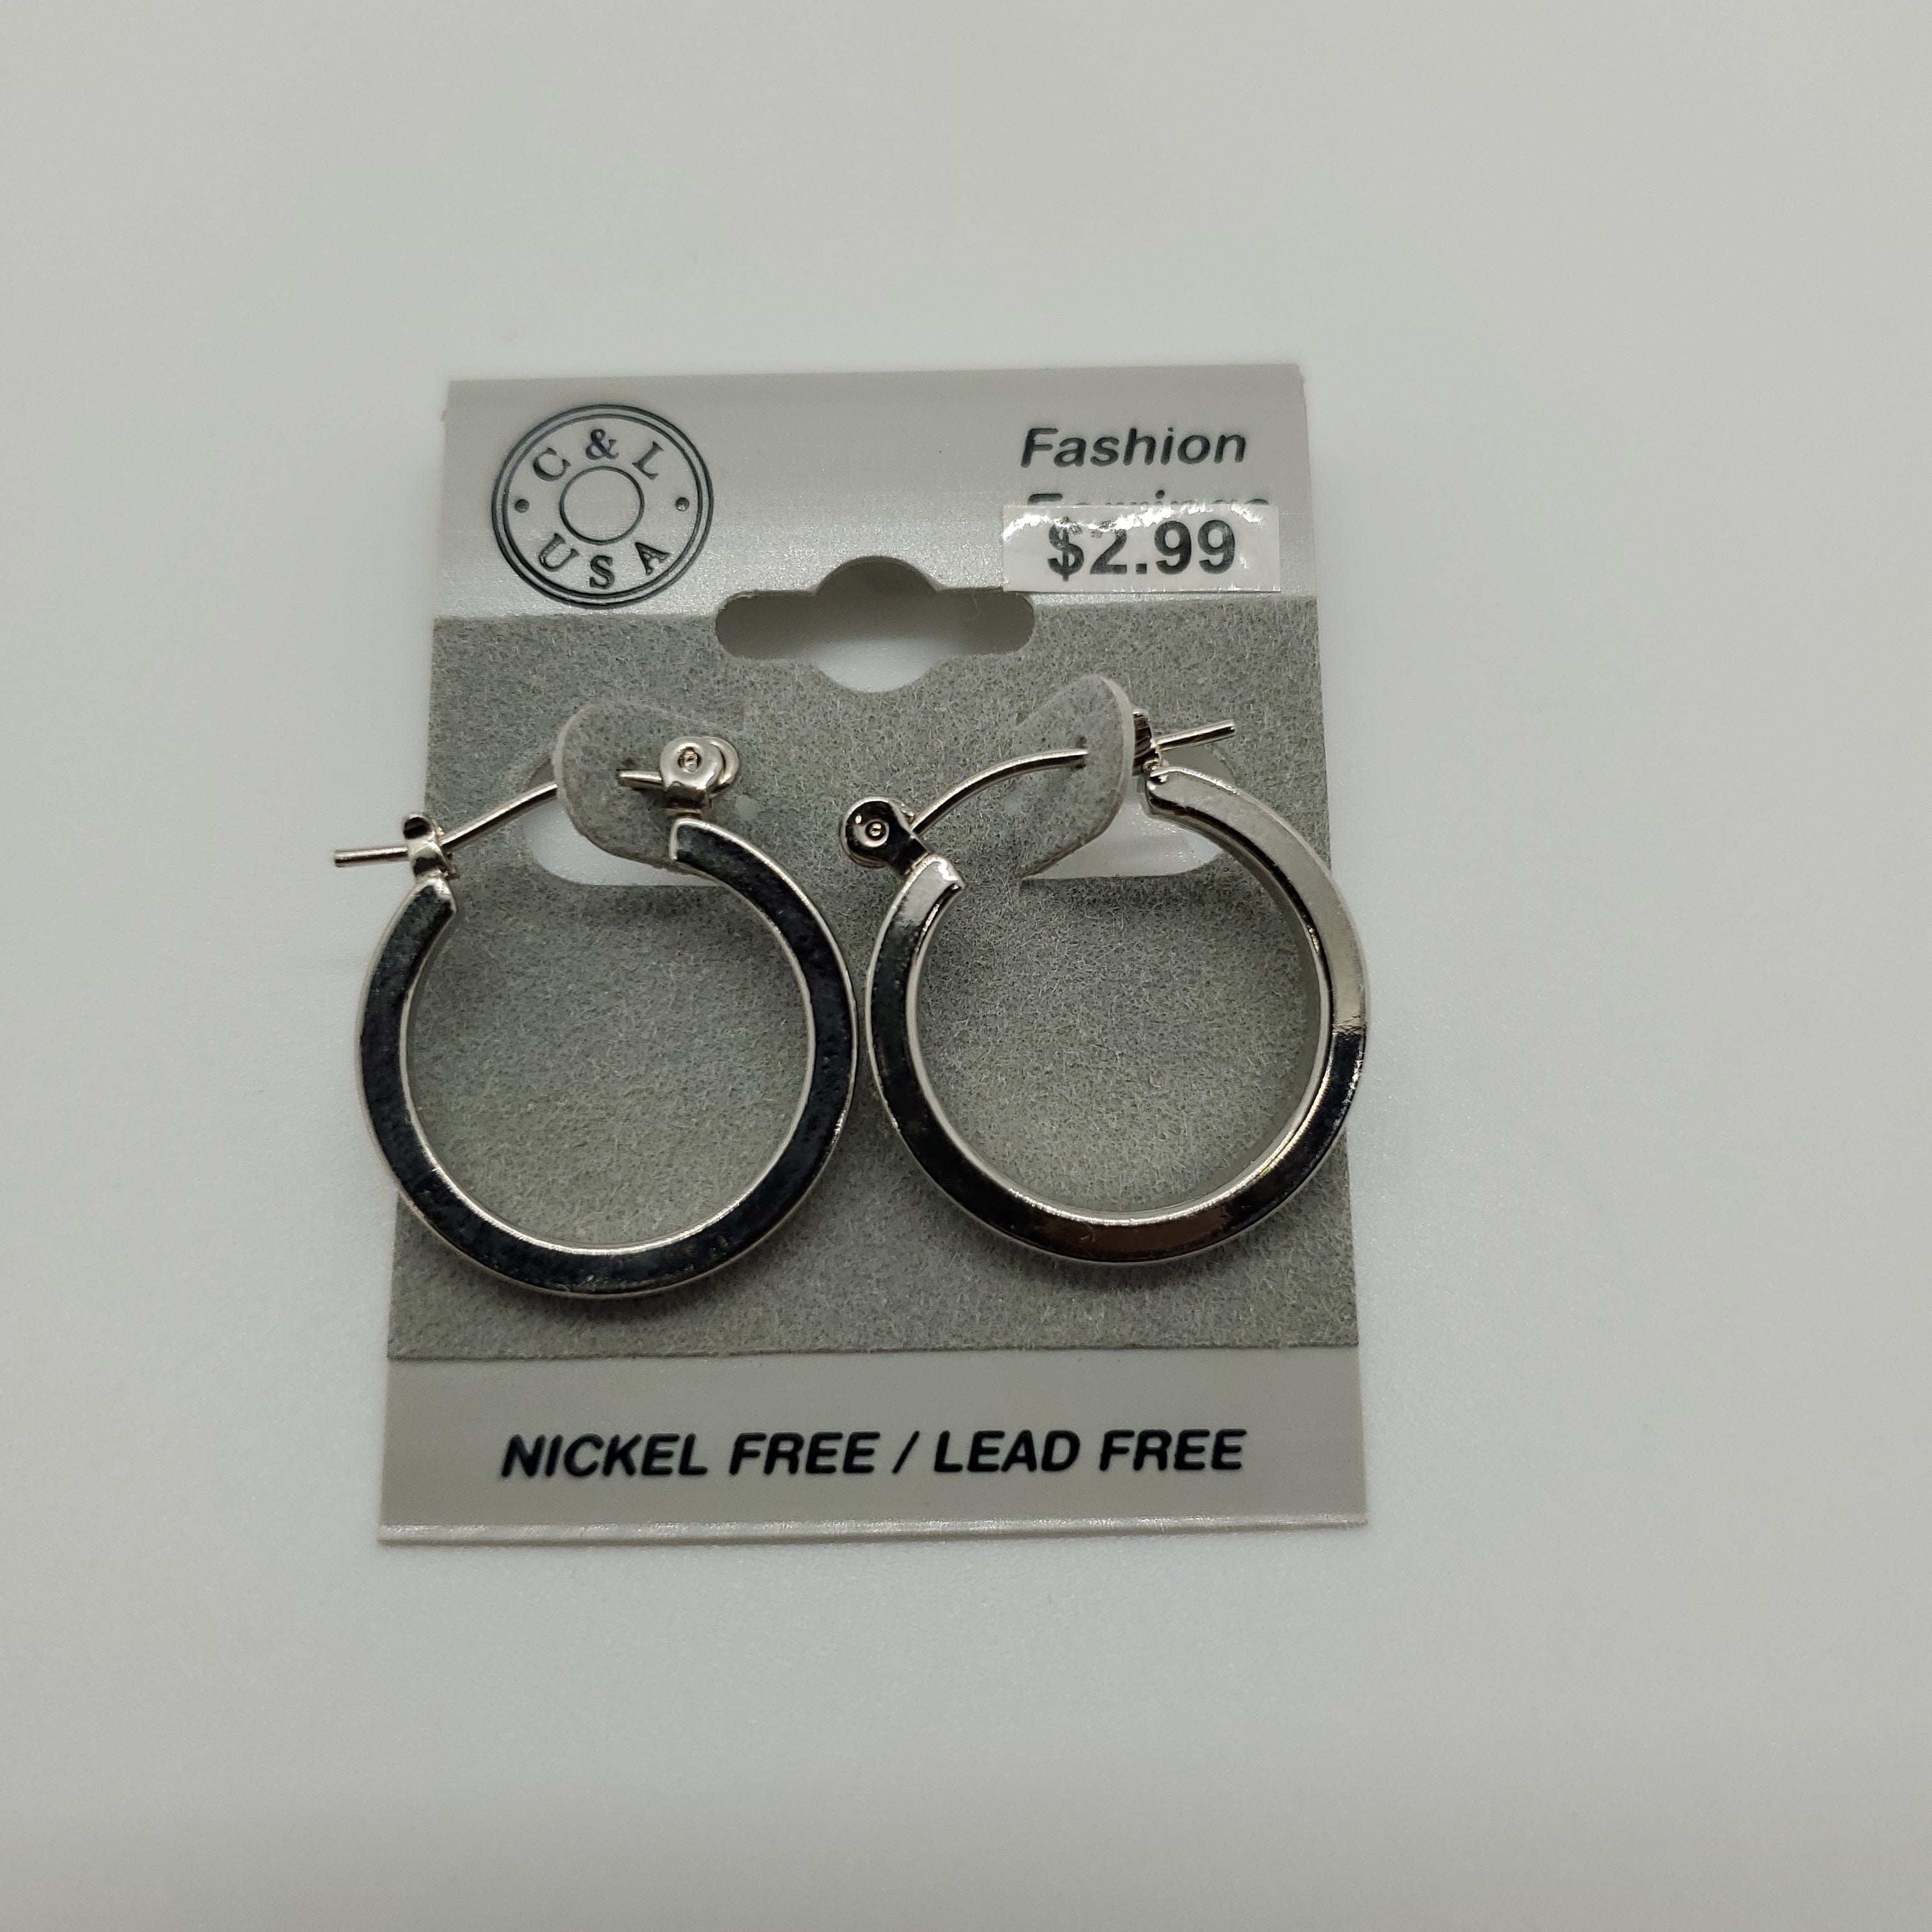 Silver Plated Pincatch Hoop Earrings NPK406 - Beauty Bar & Supply